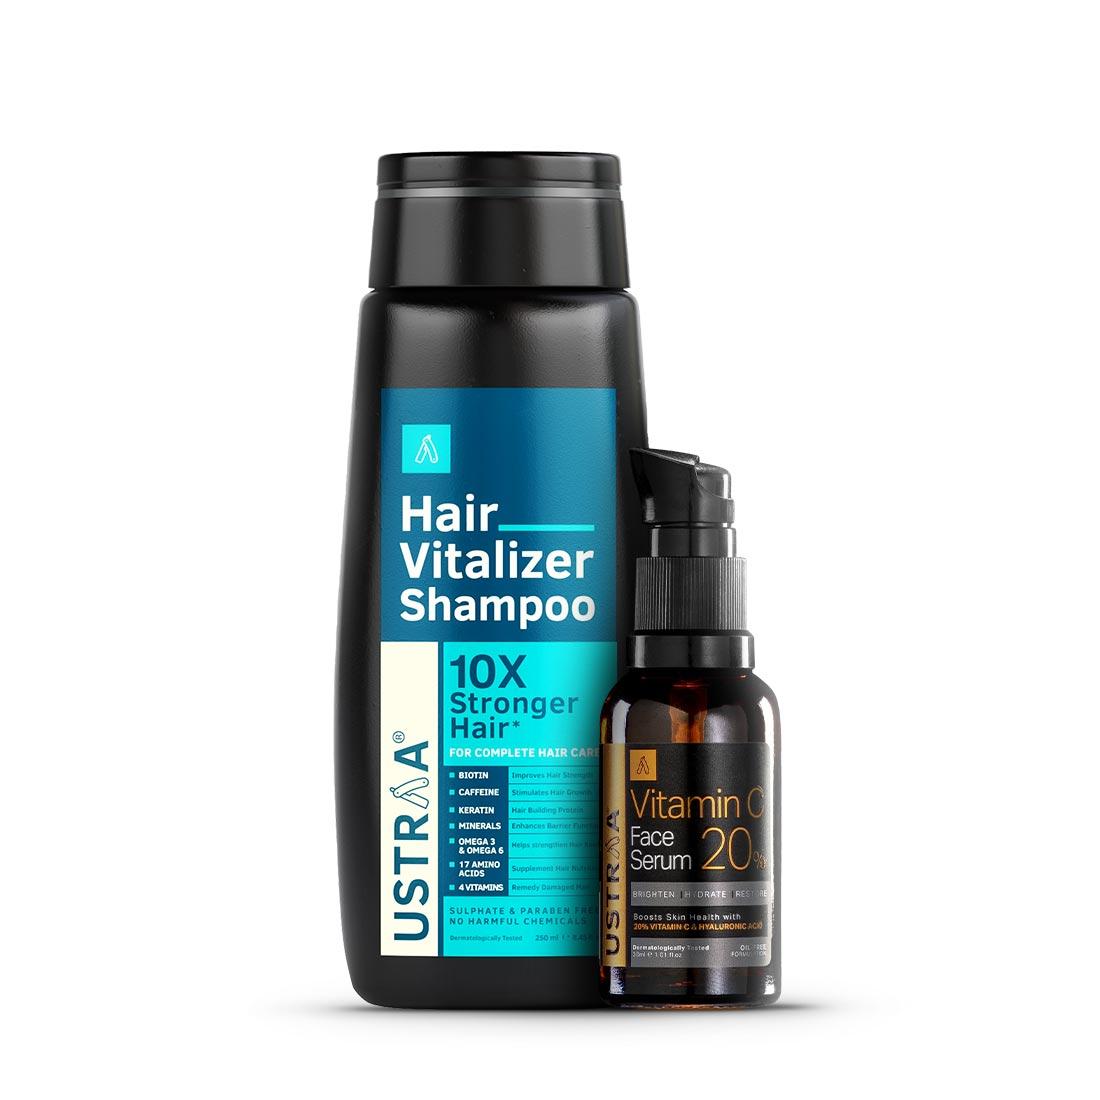 Hair Vitalizer Shampoo & 20% Viatmin C Face Serum